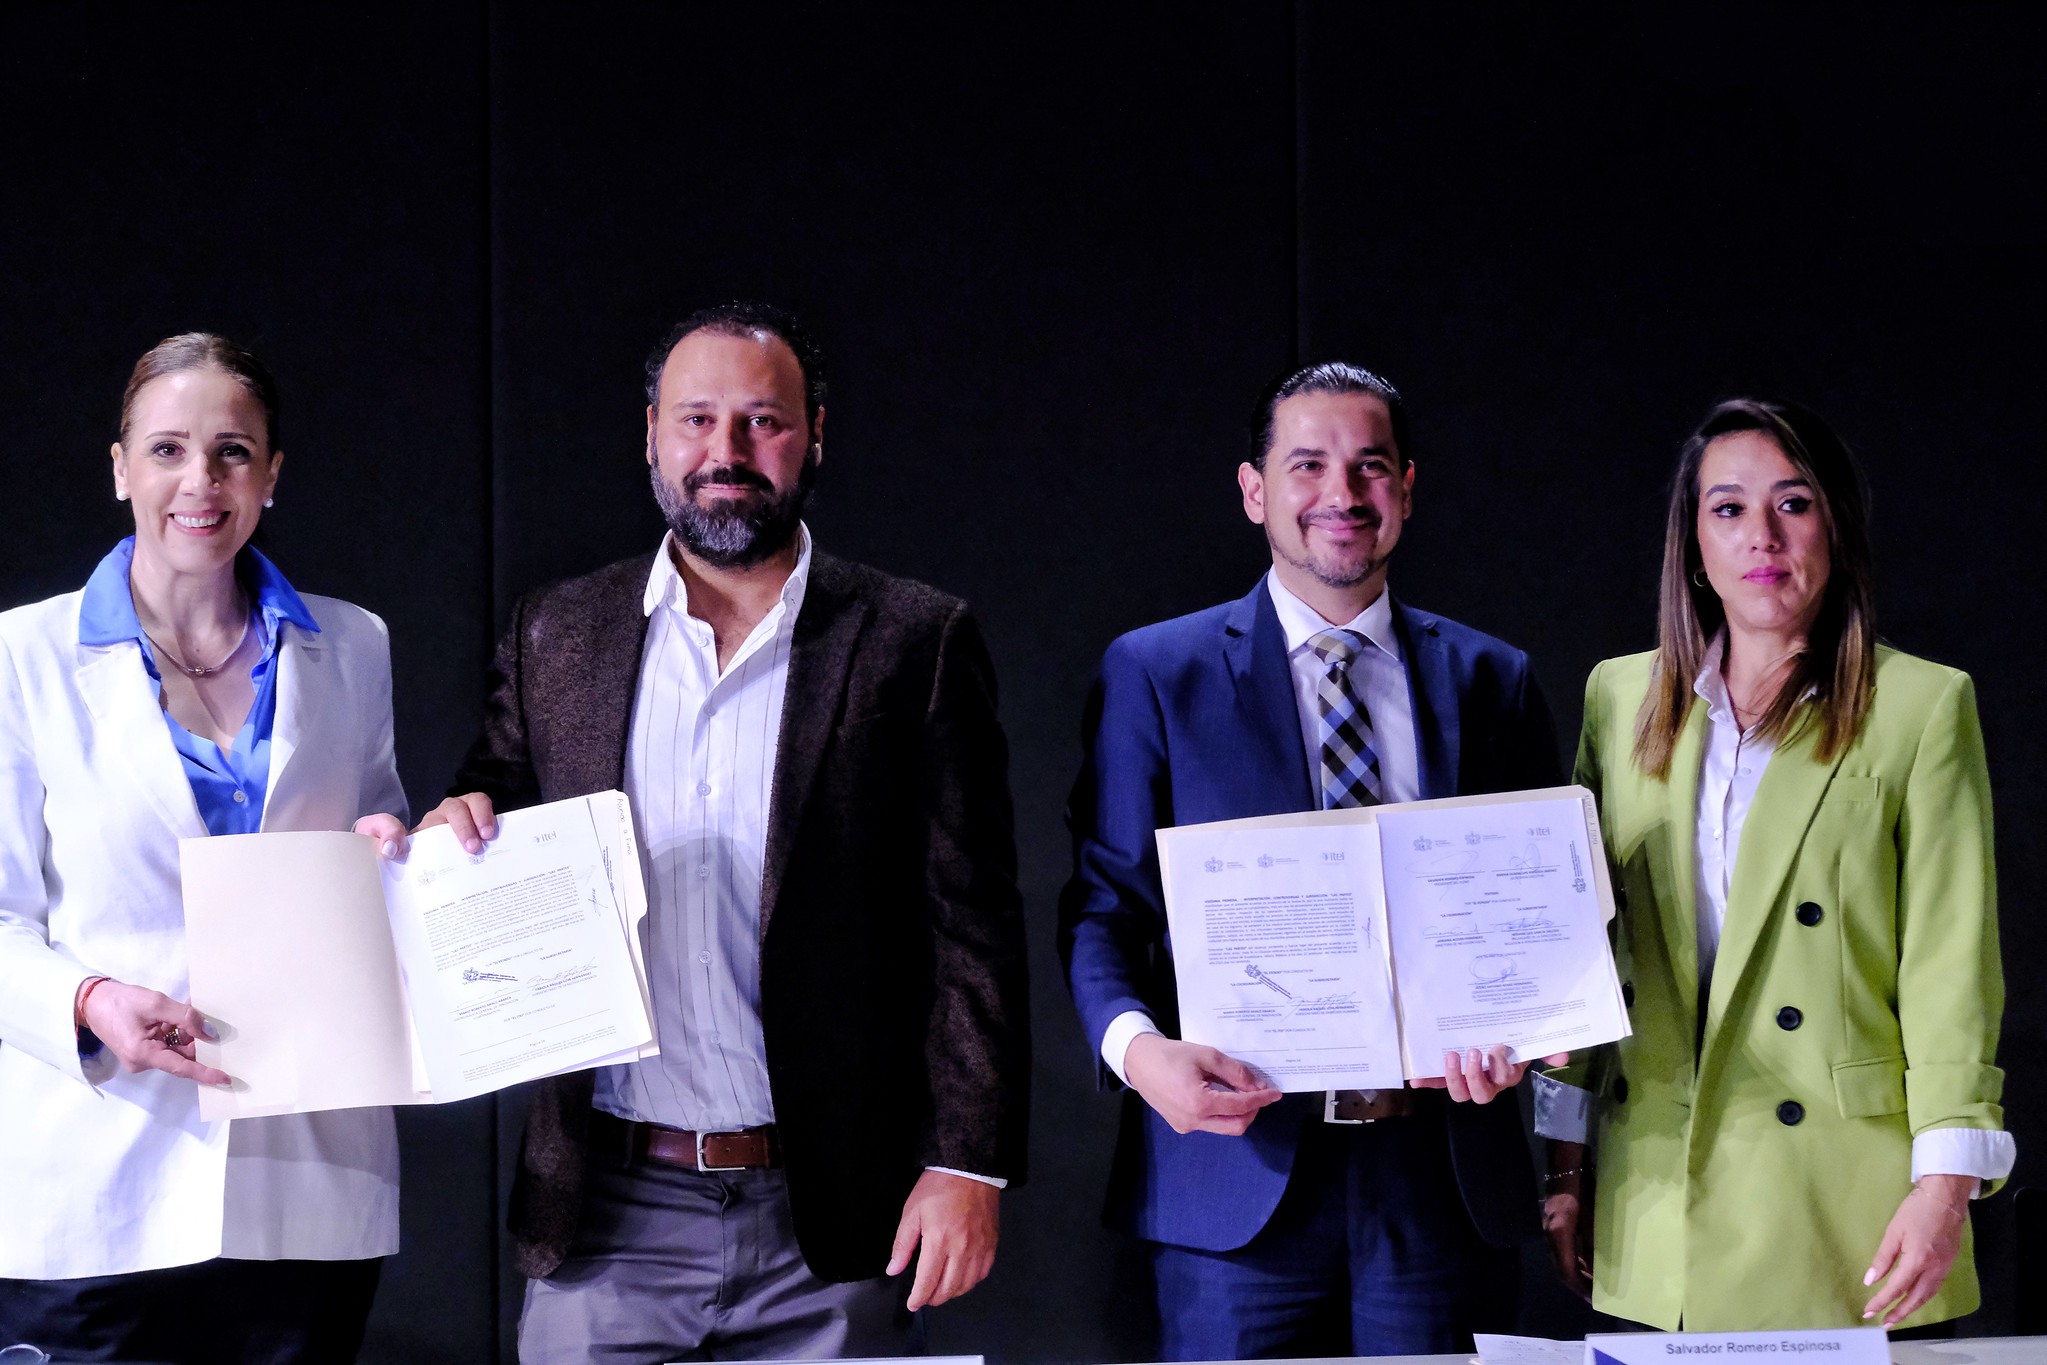 El Gobierno de Jalisco firma Acuerdo de colaboración interinstitucional para el impulso de la construcción de una ciudadanía digital incluyente 